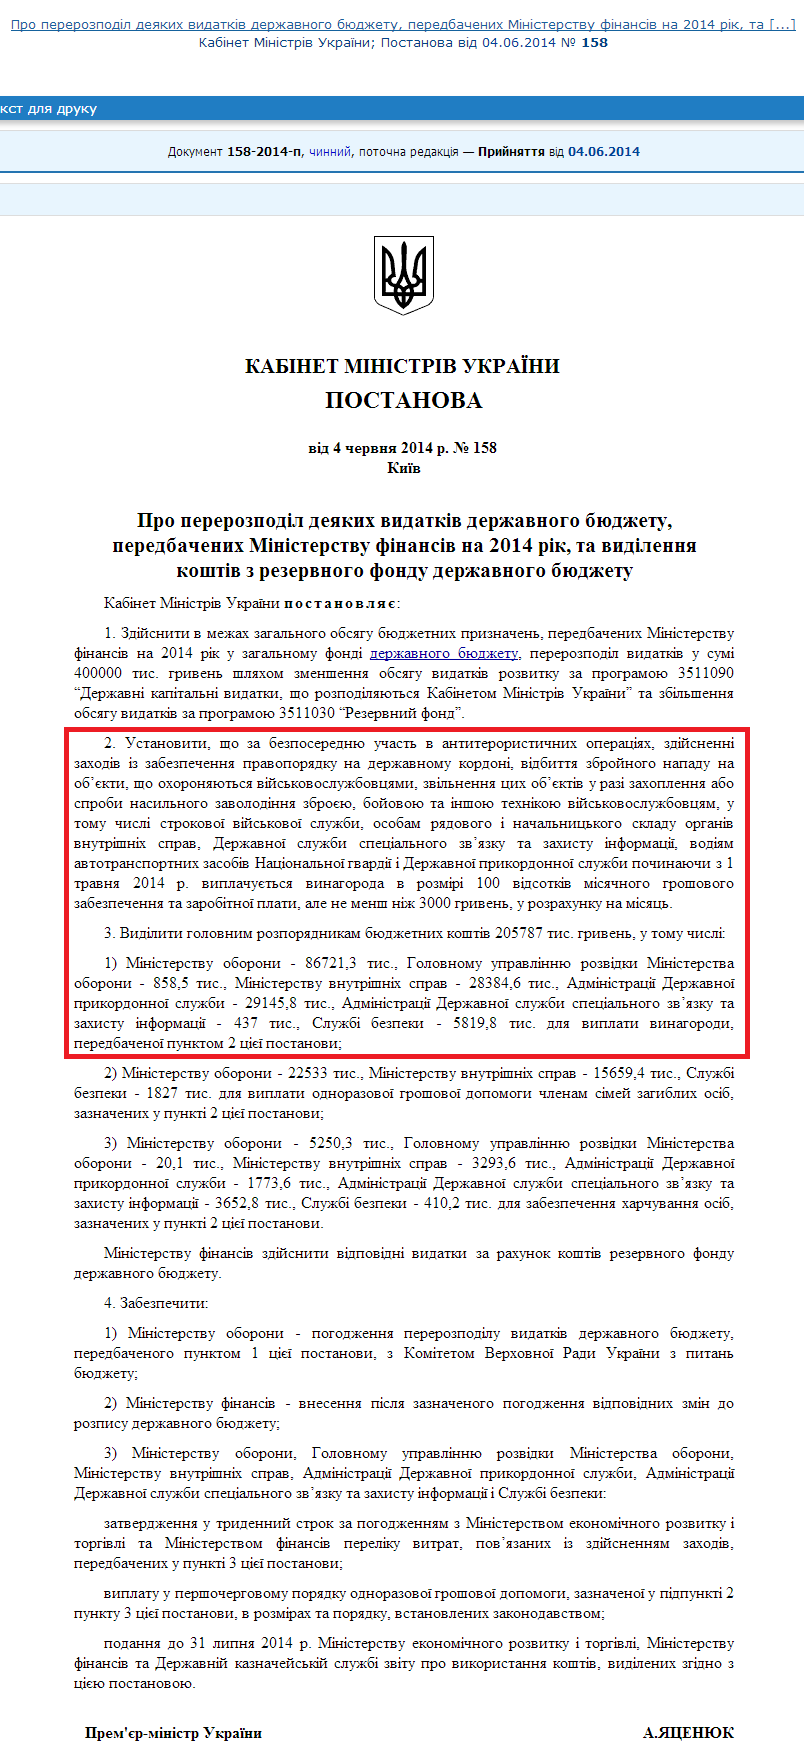 http://zakon4.rada.gov.ua/laws/show/158-2014-%D0%BF